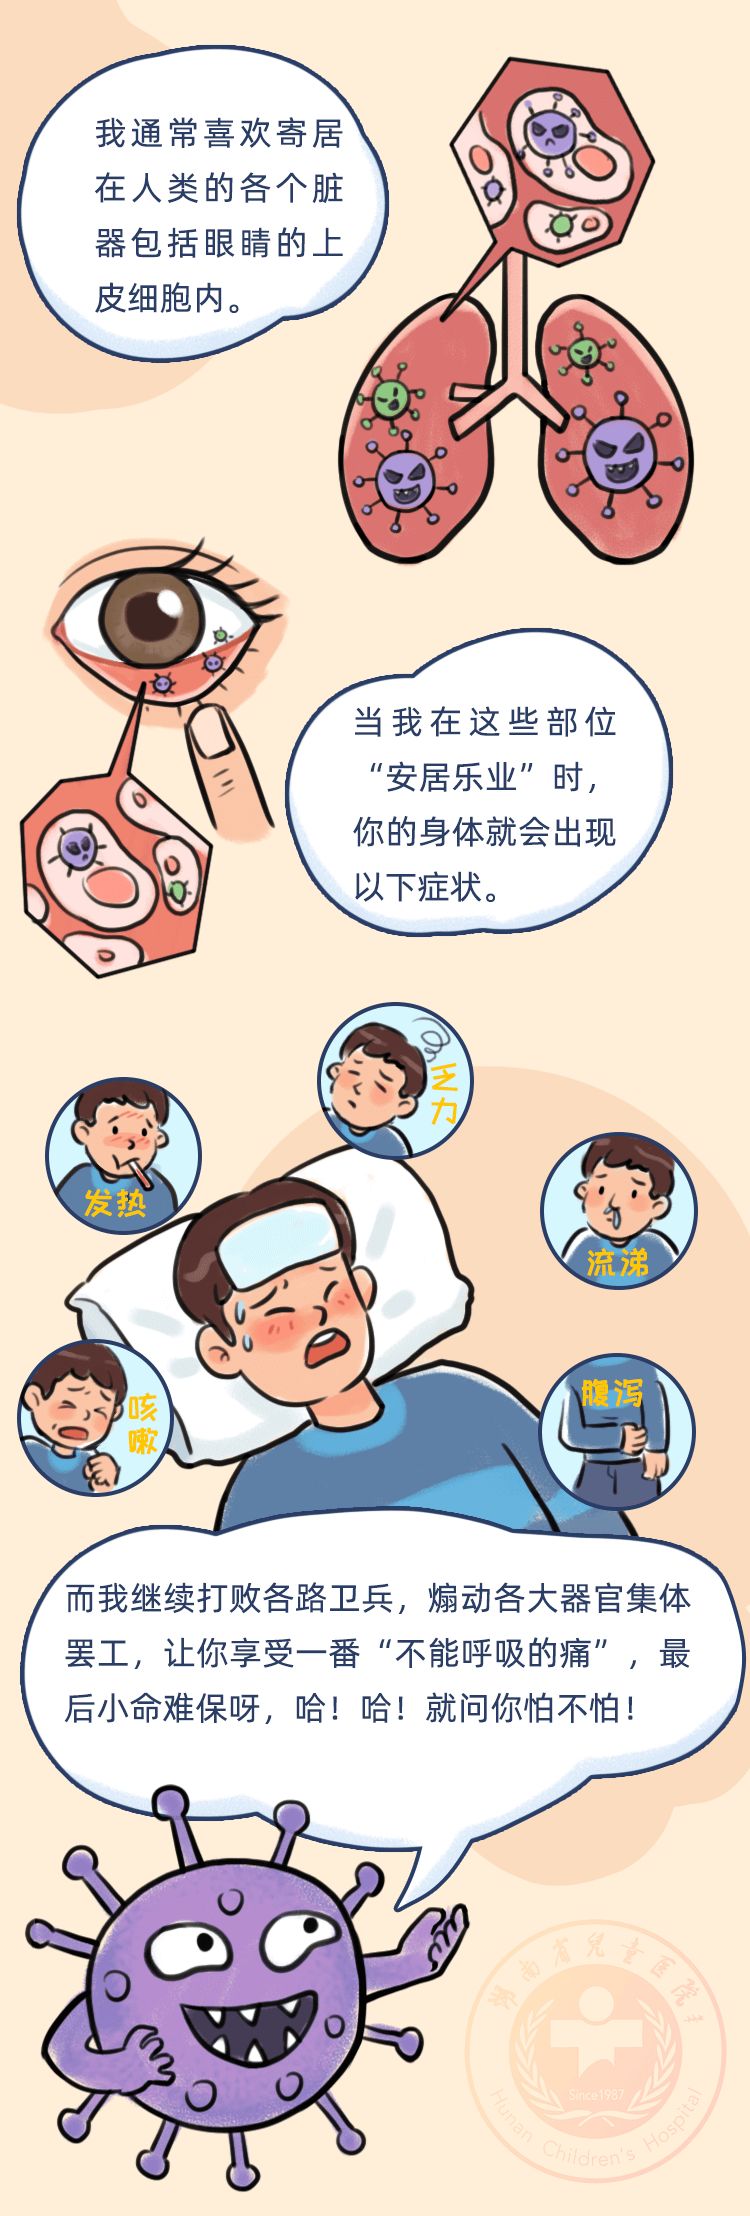 湖南省儿童医院推出手绘漫画《新冠病毒作妖记》